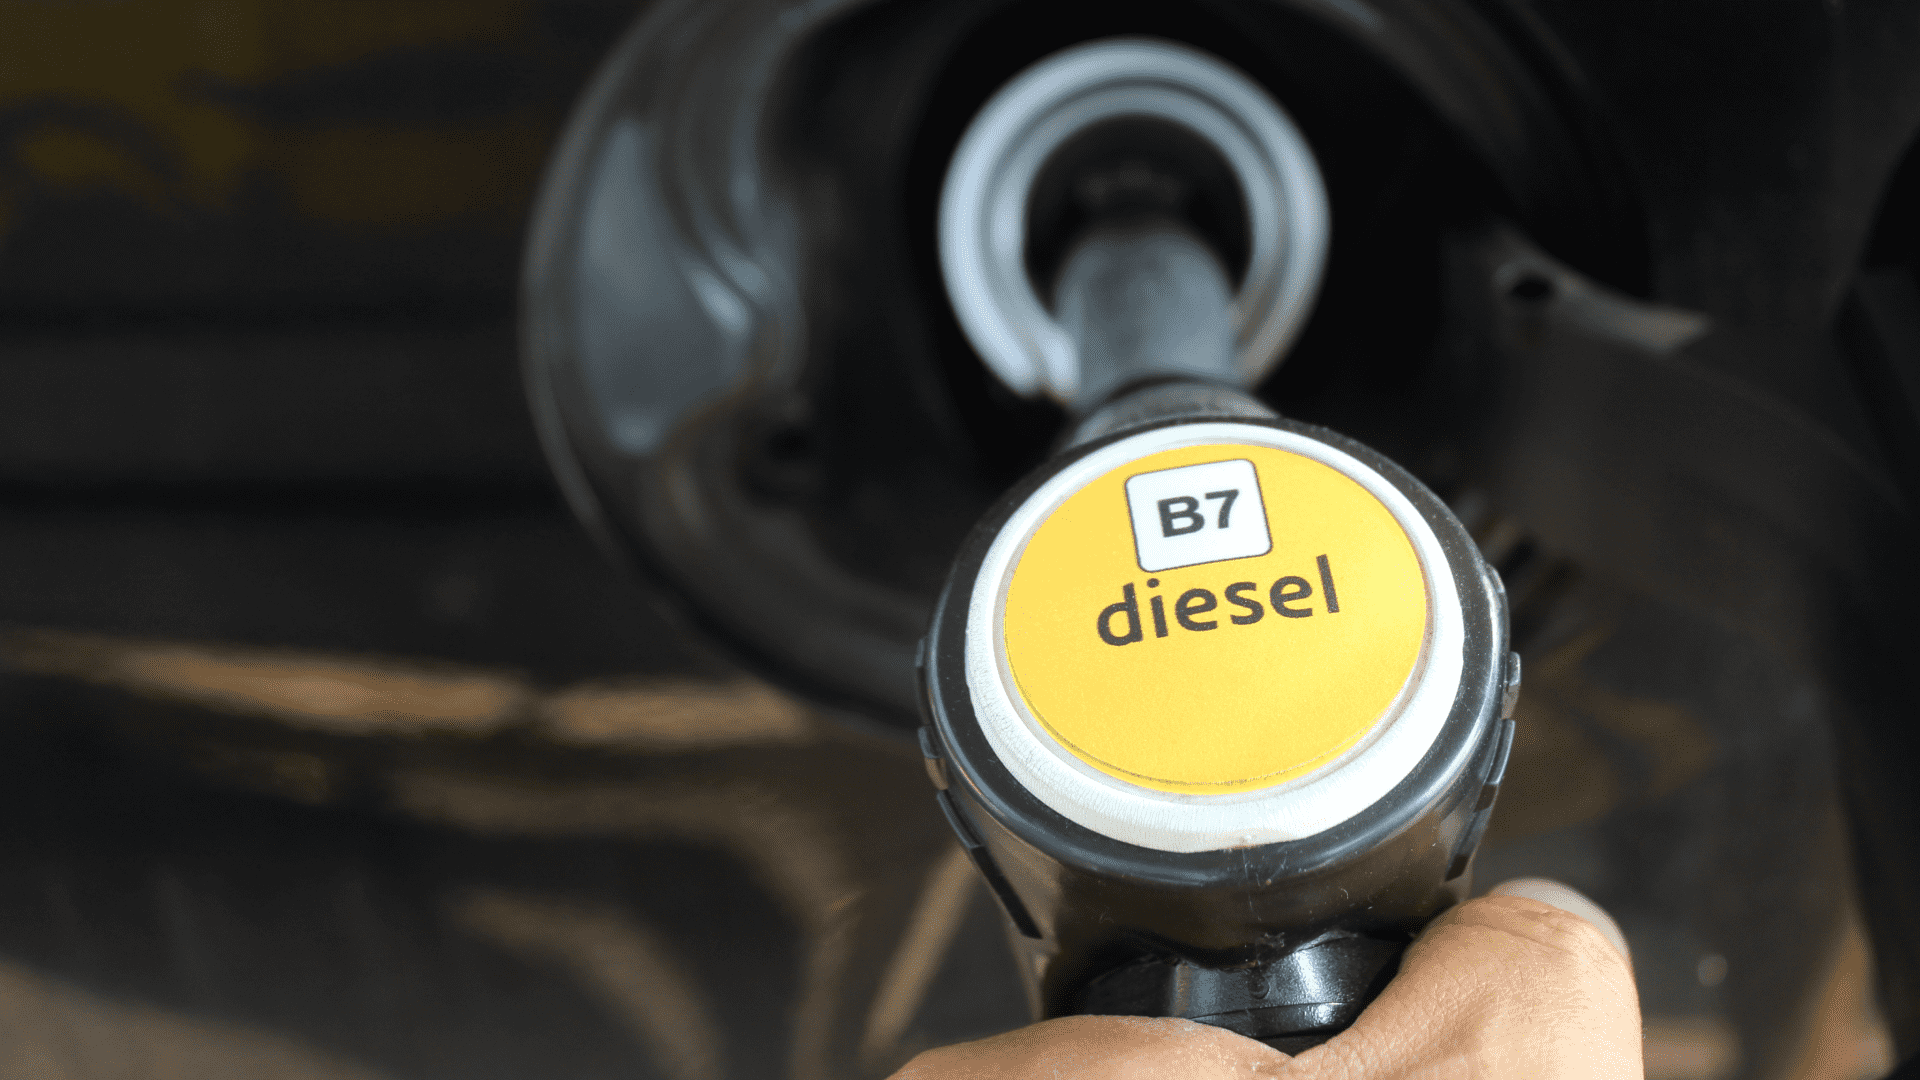 Lohnt sich Diesel noch? Warum es oft vom DPF abhängt